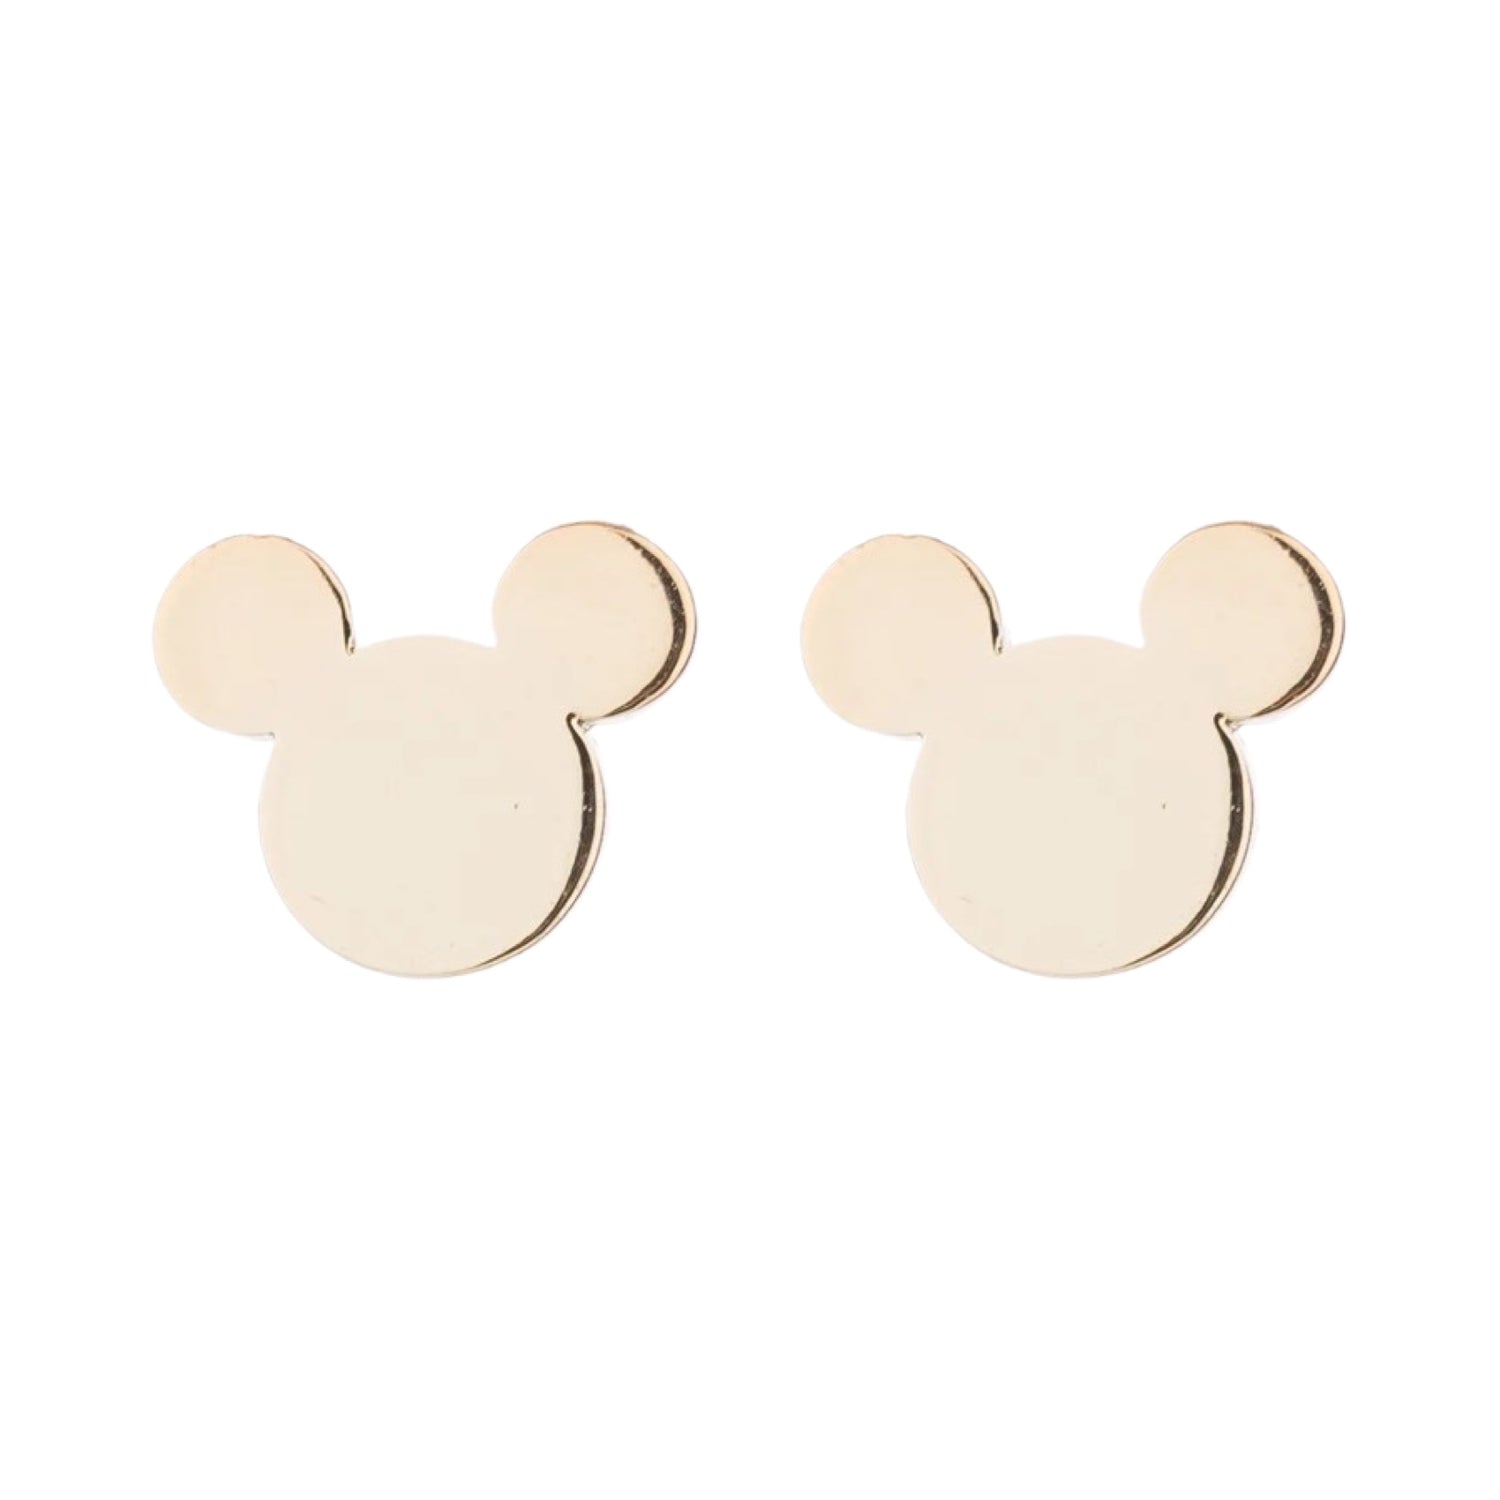 Chiralstahl-Ohrringe für Kinder: Maus Gold